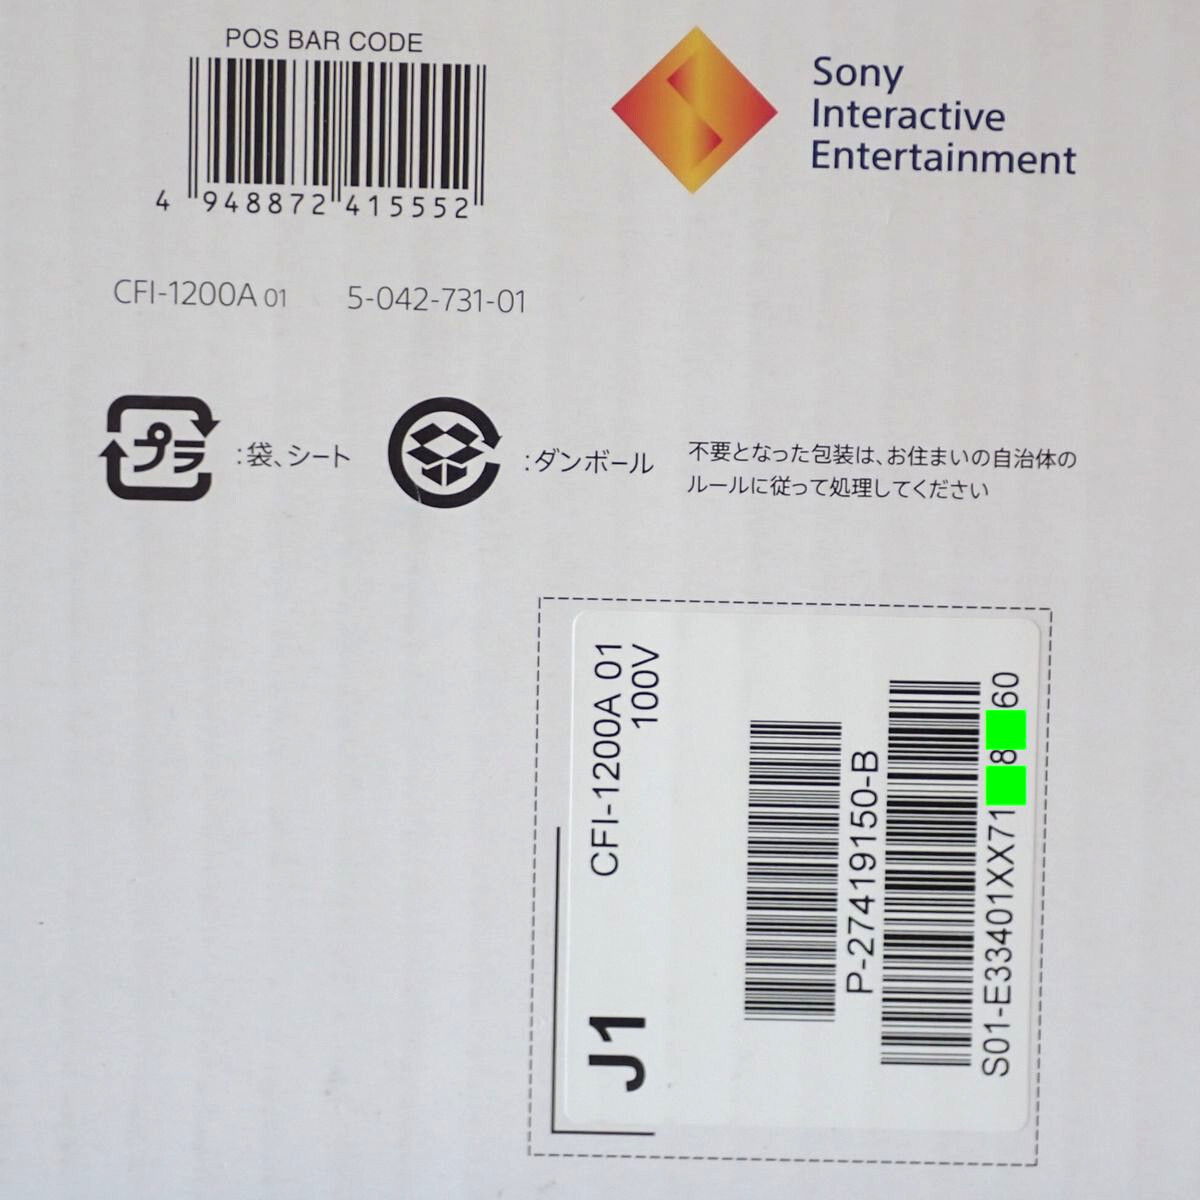 【質屋】SONY PlayStation5 CFI-1200A01 プレイステーション5 PS5 初期型 未使用品 [4529]_初期型